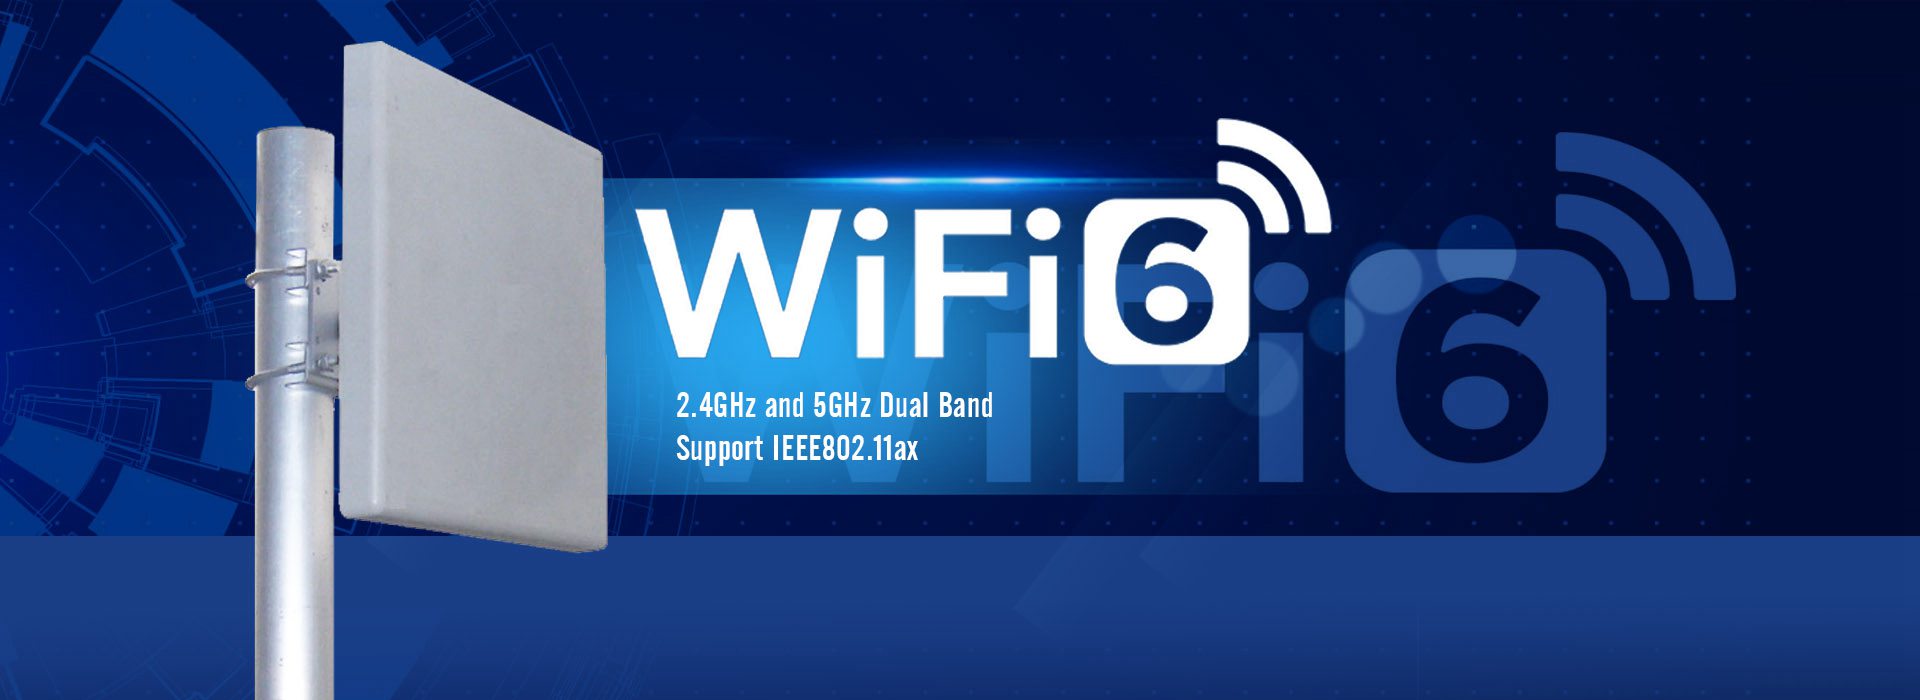 wifi6天線